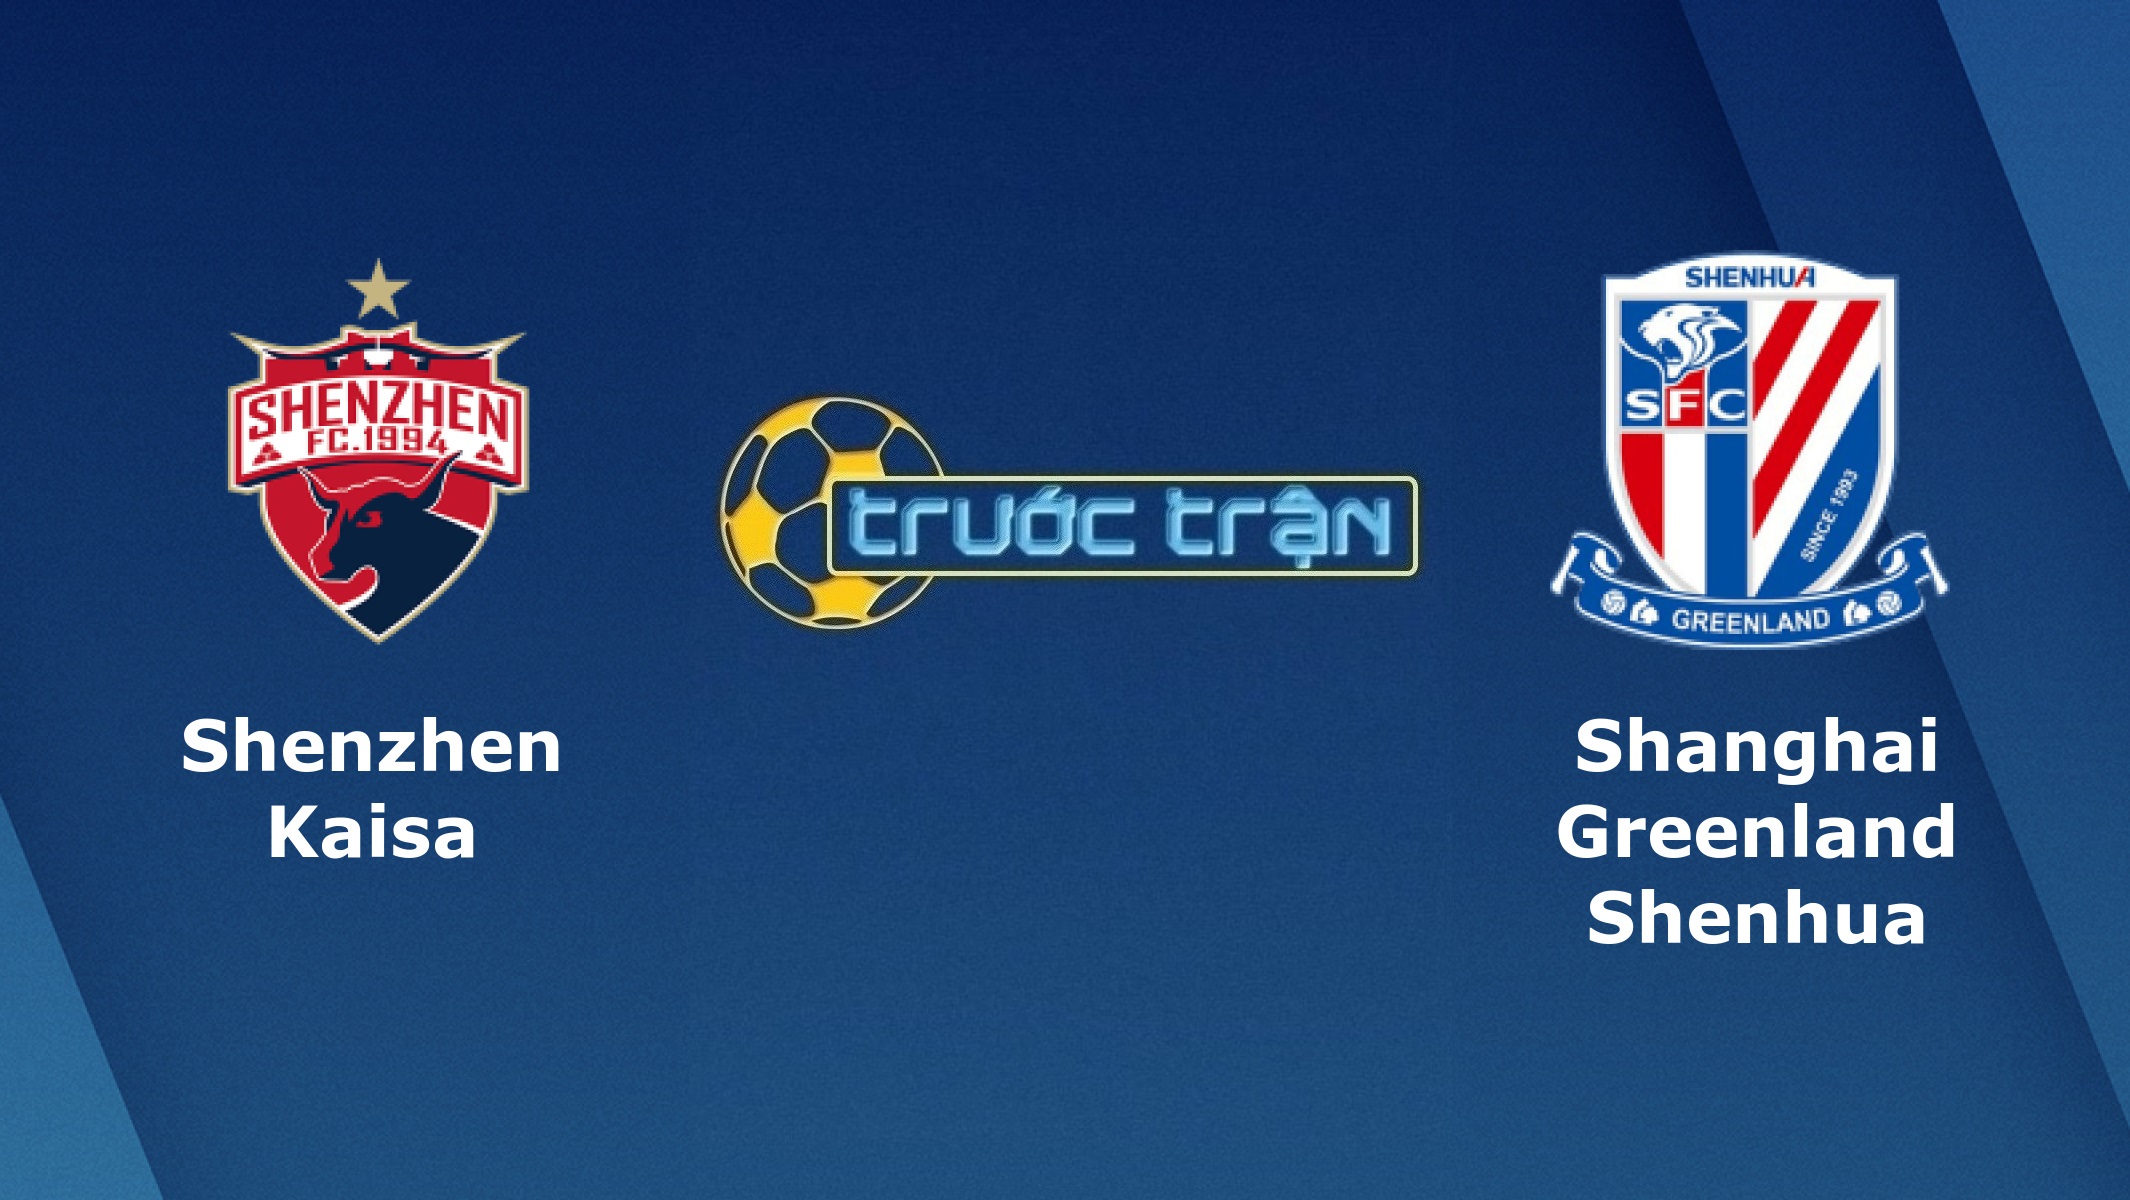 Shenzhen vs Shanghai Shenhua –Tip kèo bóng đá hôm nay – 04/09